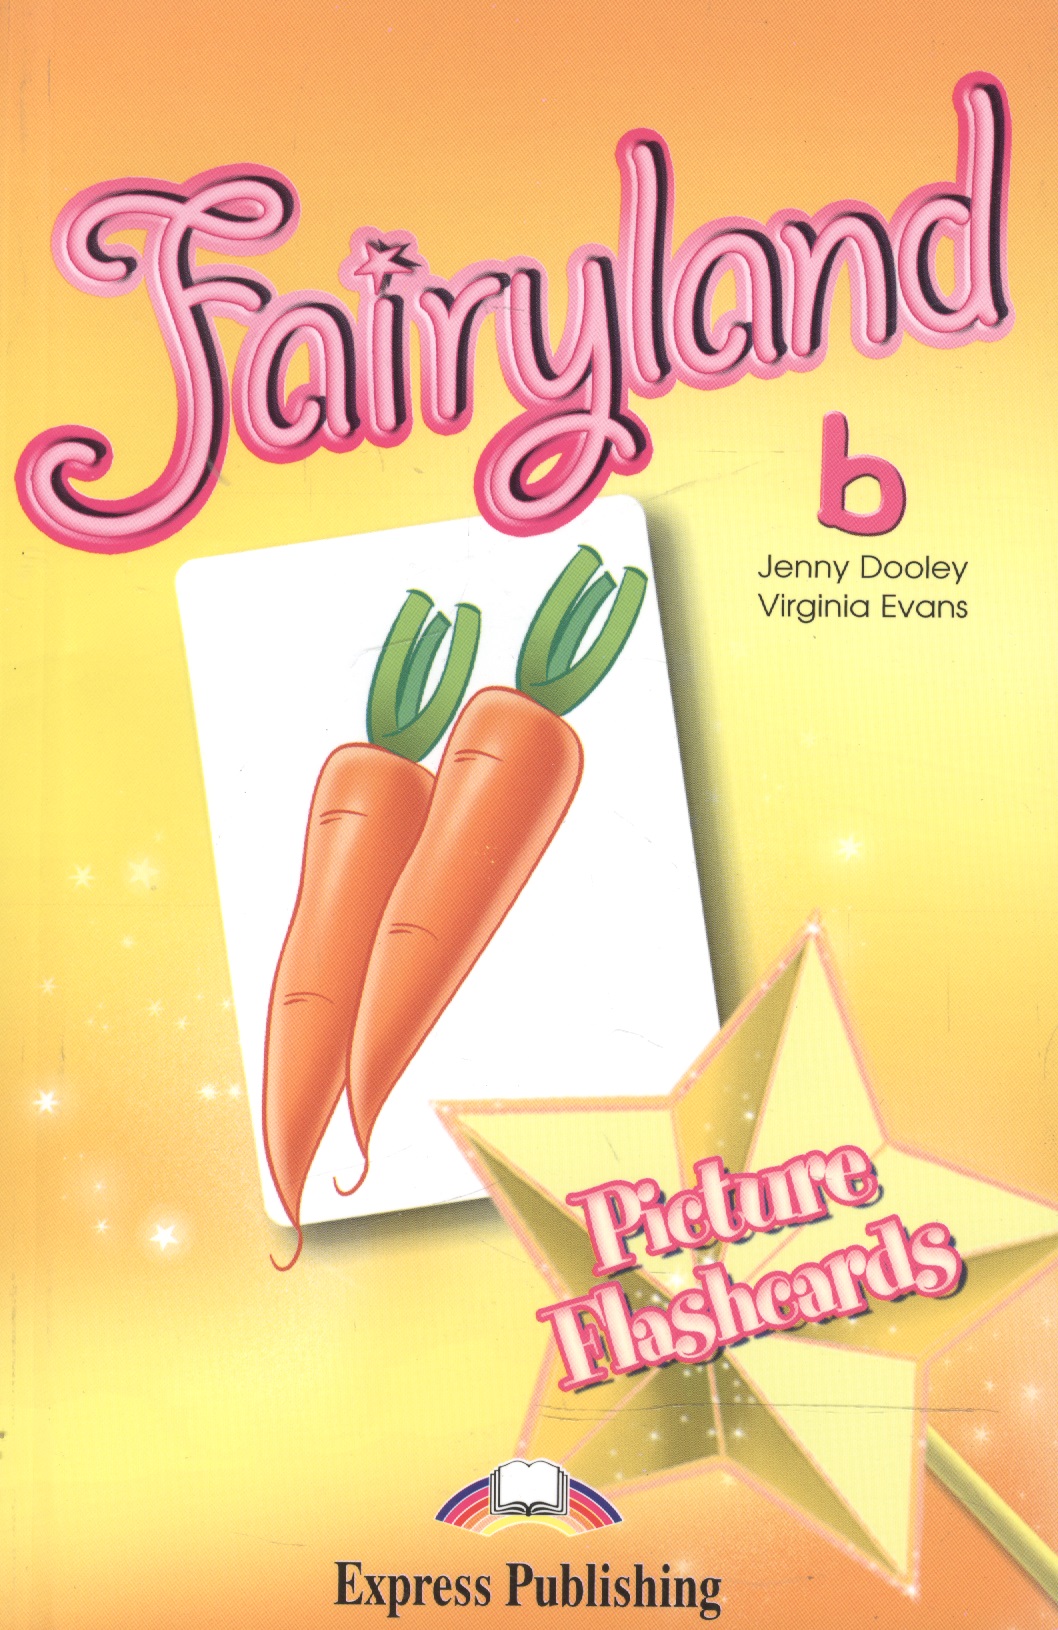 Эванс Вирджиния Fairyland 2. Picture Flashcards. Beginner. Раздаточный материал